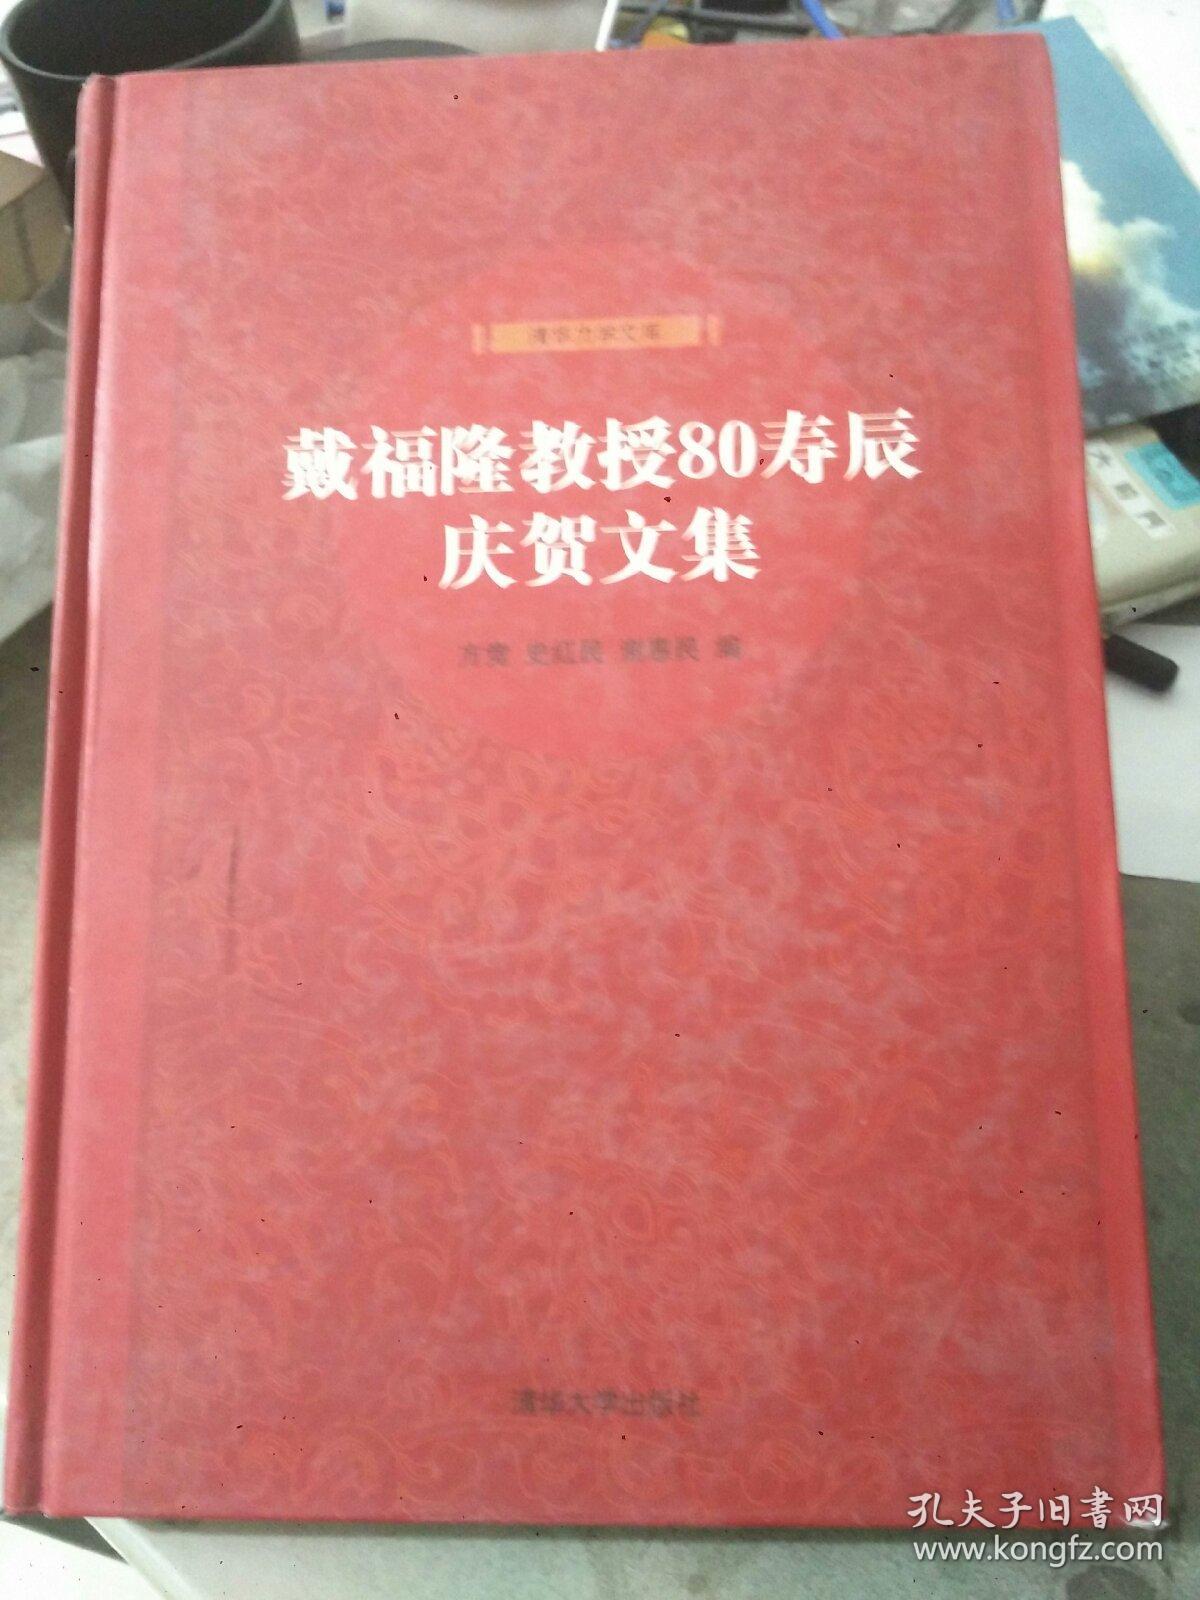 戴福隆教授80寿辰庆贺文集